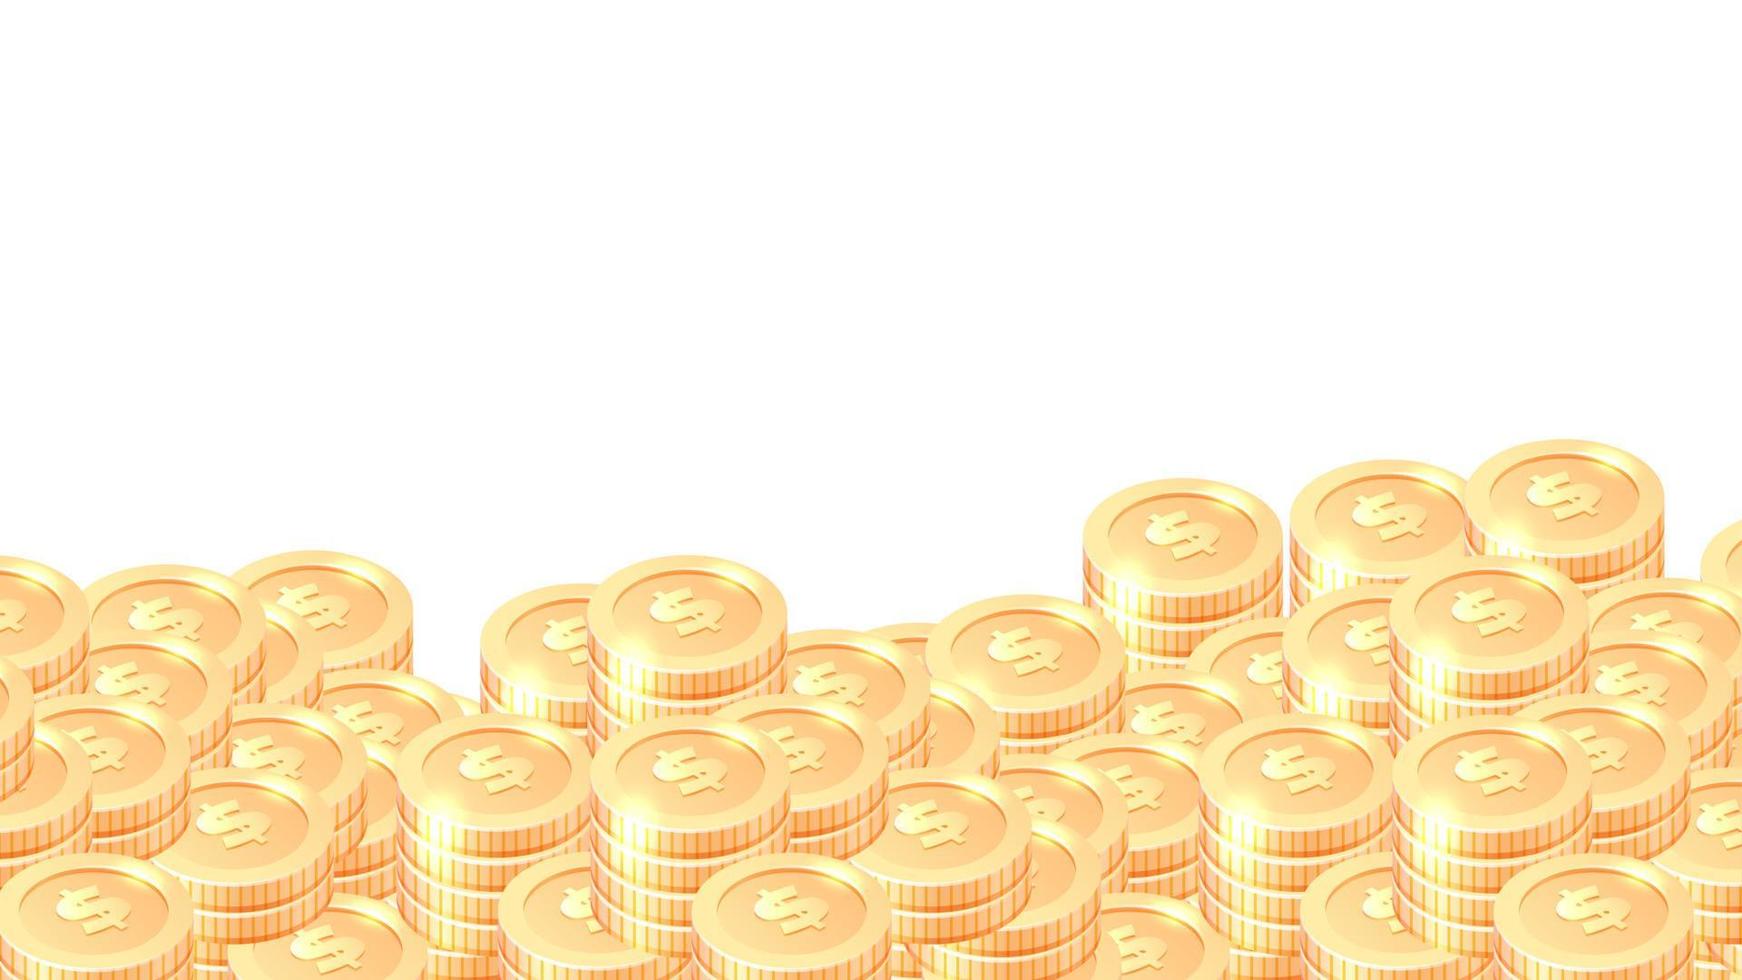 Piles of gold coins cartoon vector frame or border